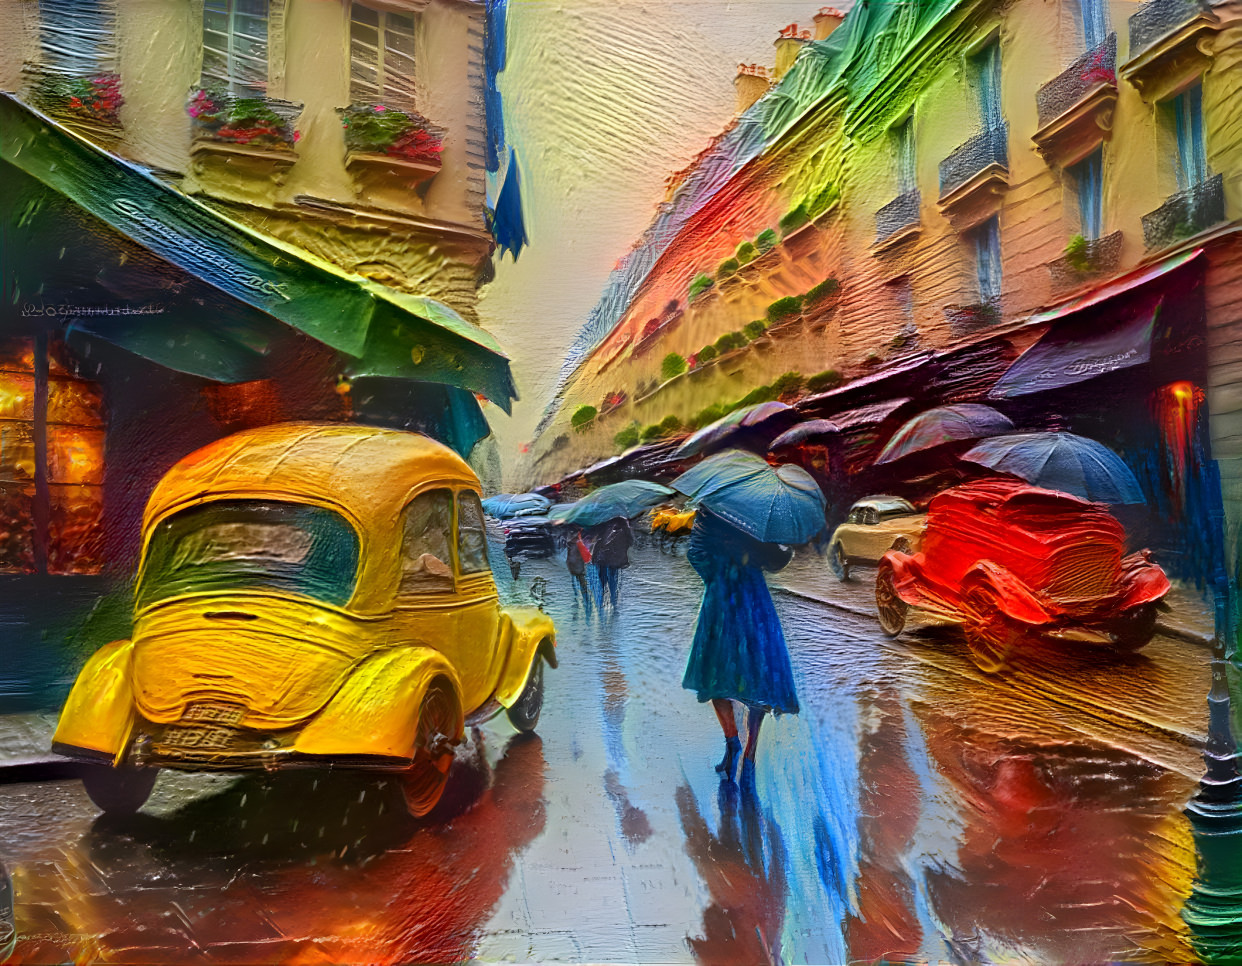 Paris in the Rain 2